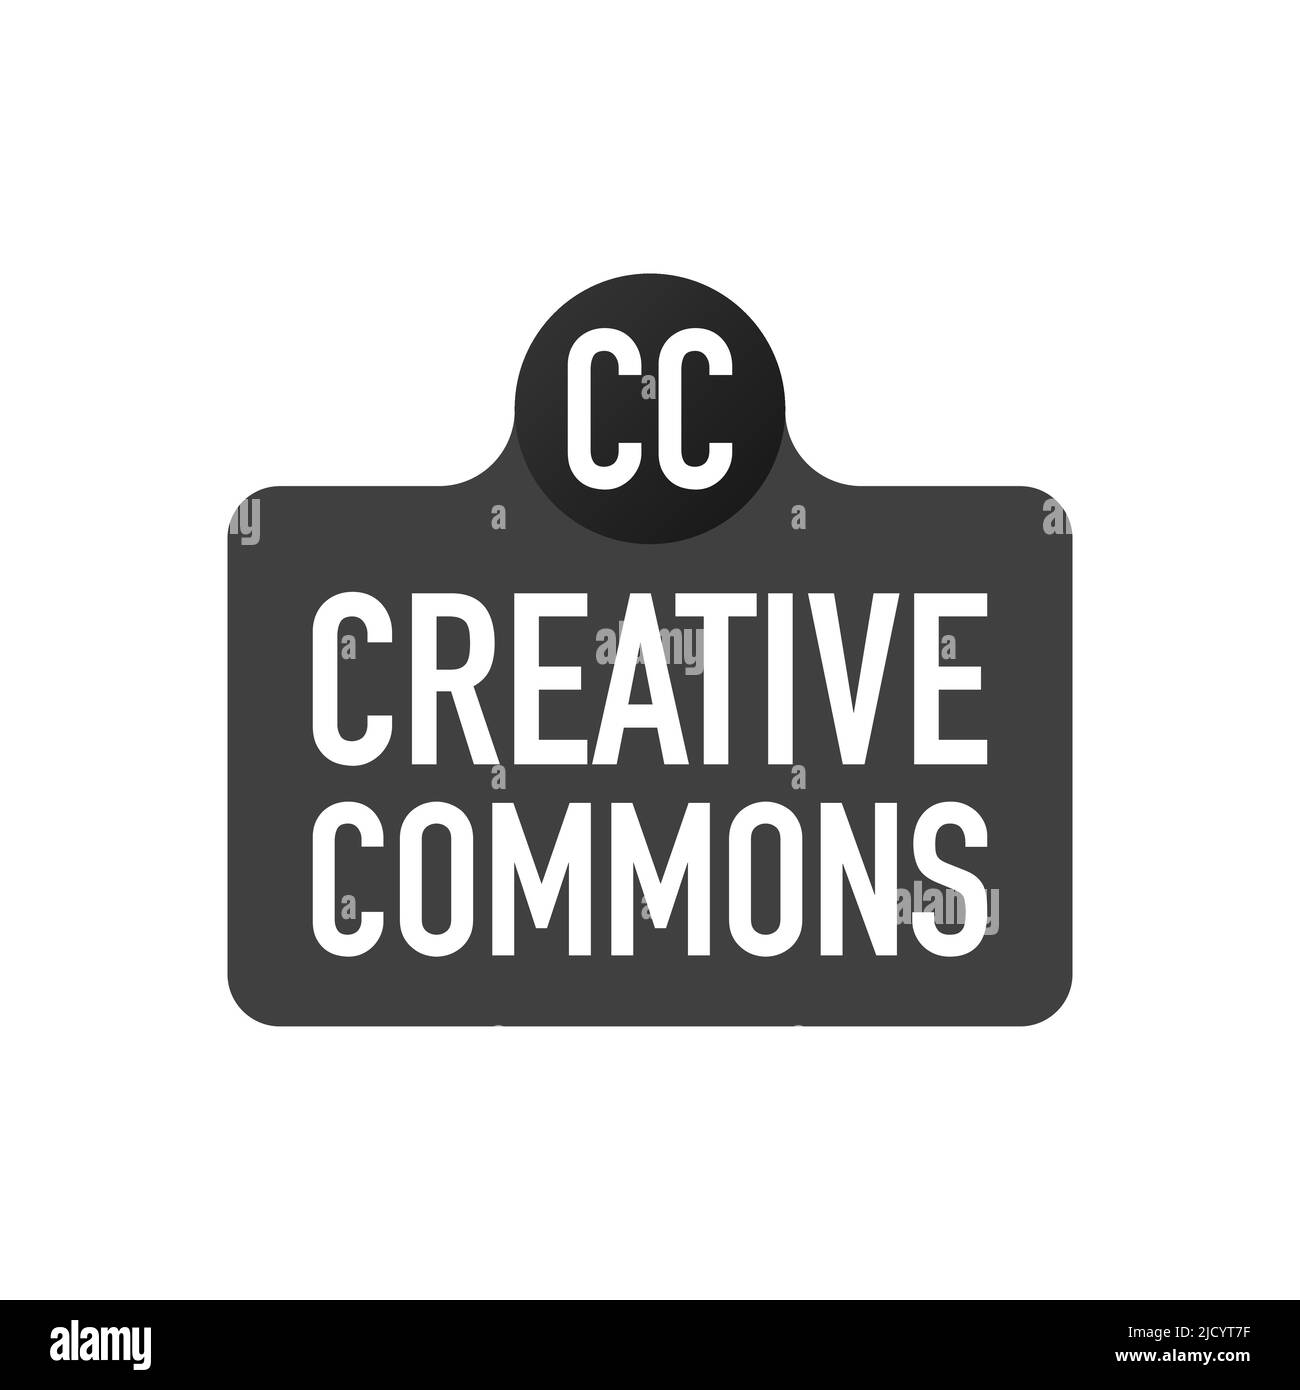 Creative commons rights management sign con icono circular CC. Ilustración vectorial. Ilustración del Vector